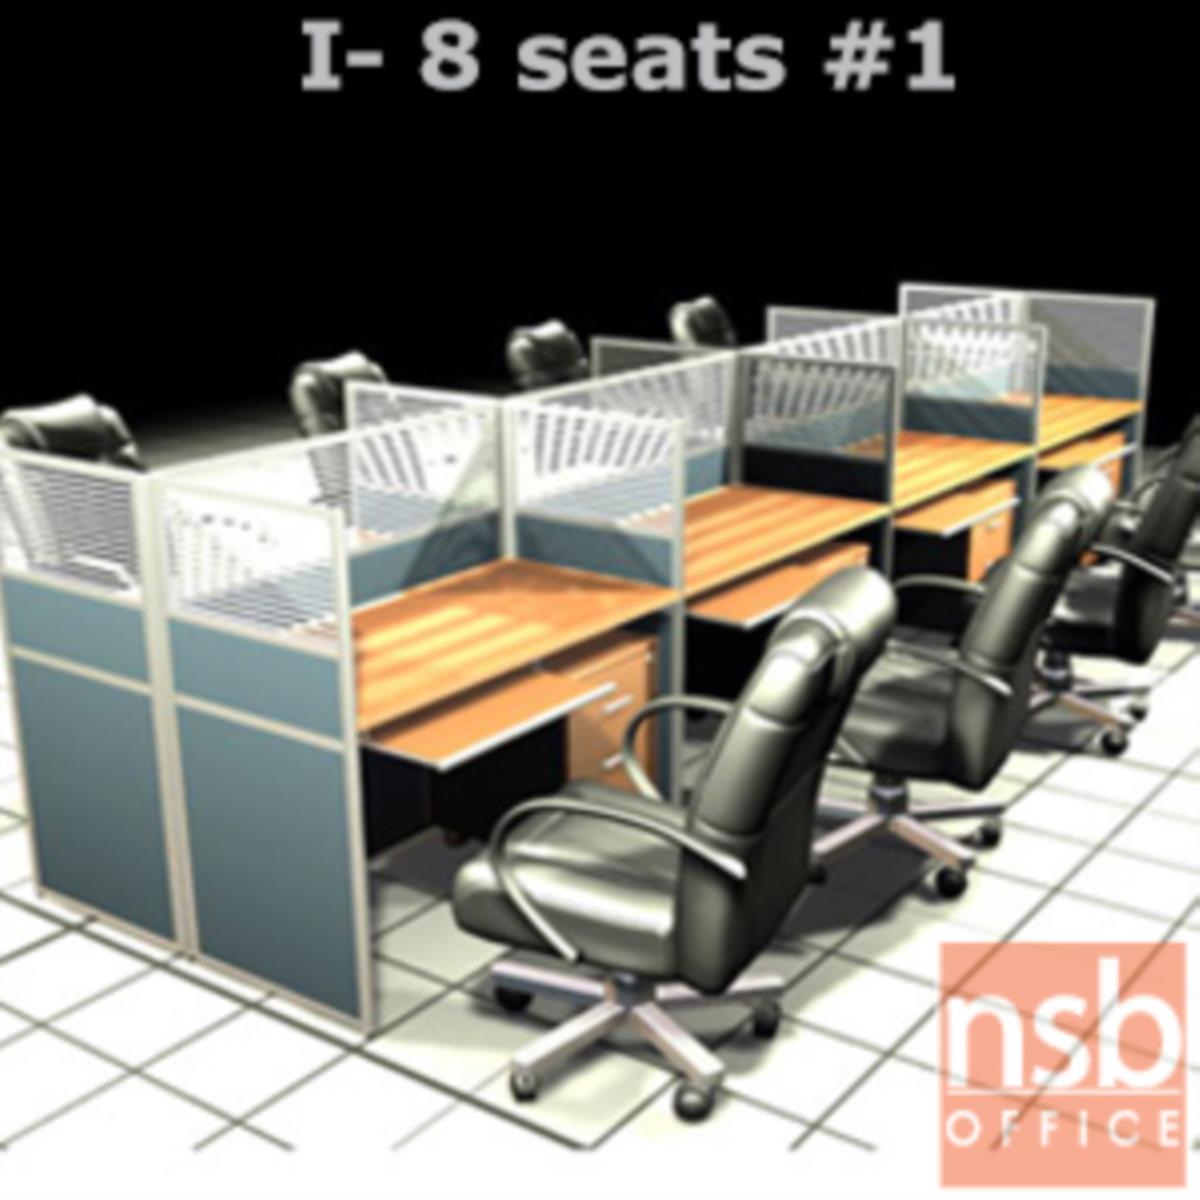 A04A093:ชุดโต๊ะทำงานกลุ่ม 8 ที่นั่ง   ขนาดรวม 490W*122D cm. พร้อมพาร์ทิชั่นครึ่งกระจกขัดลาย